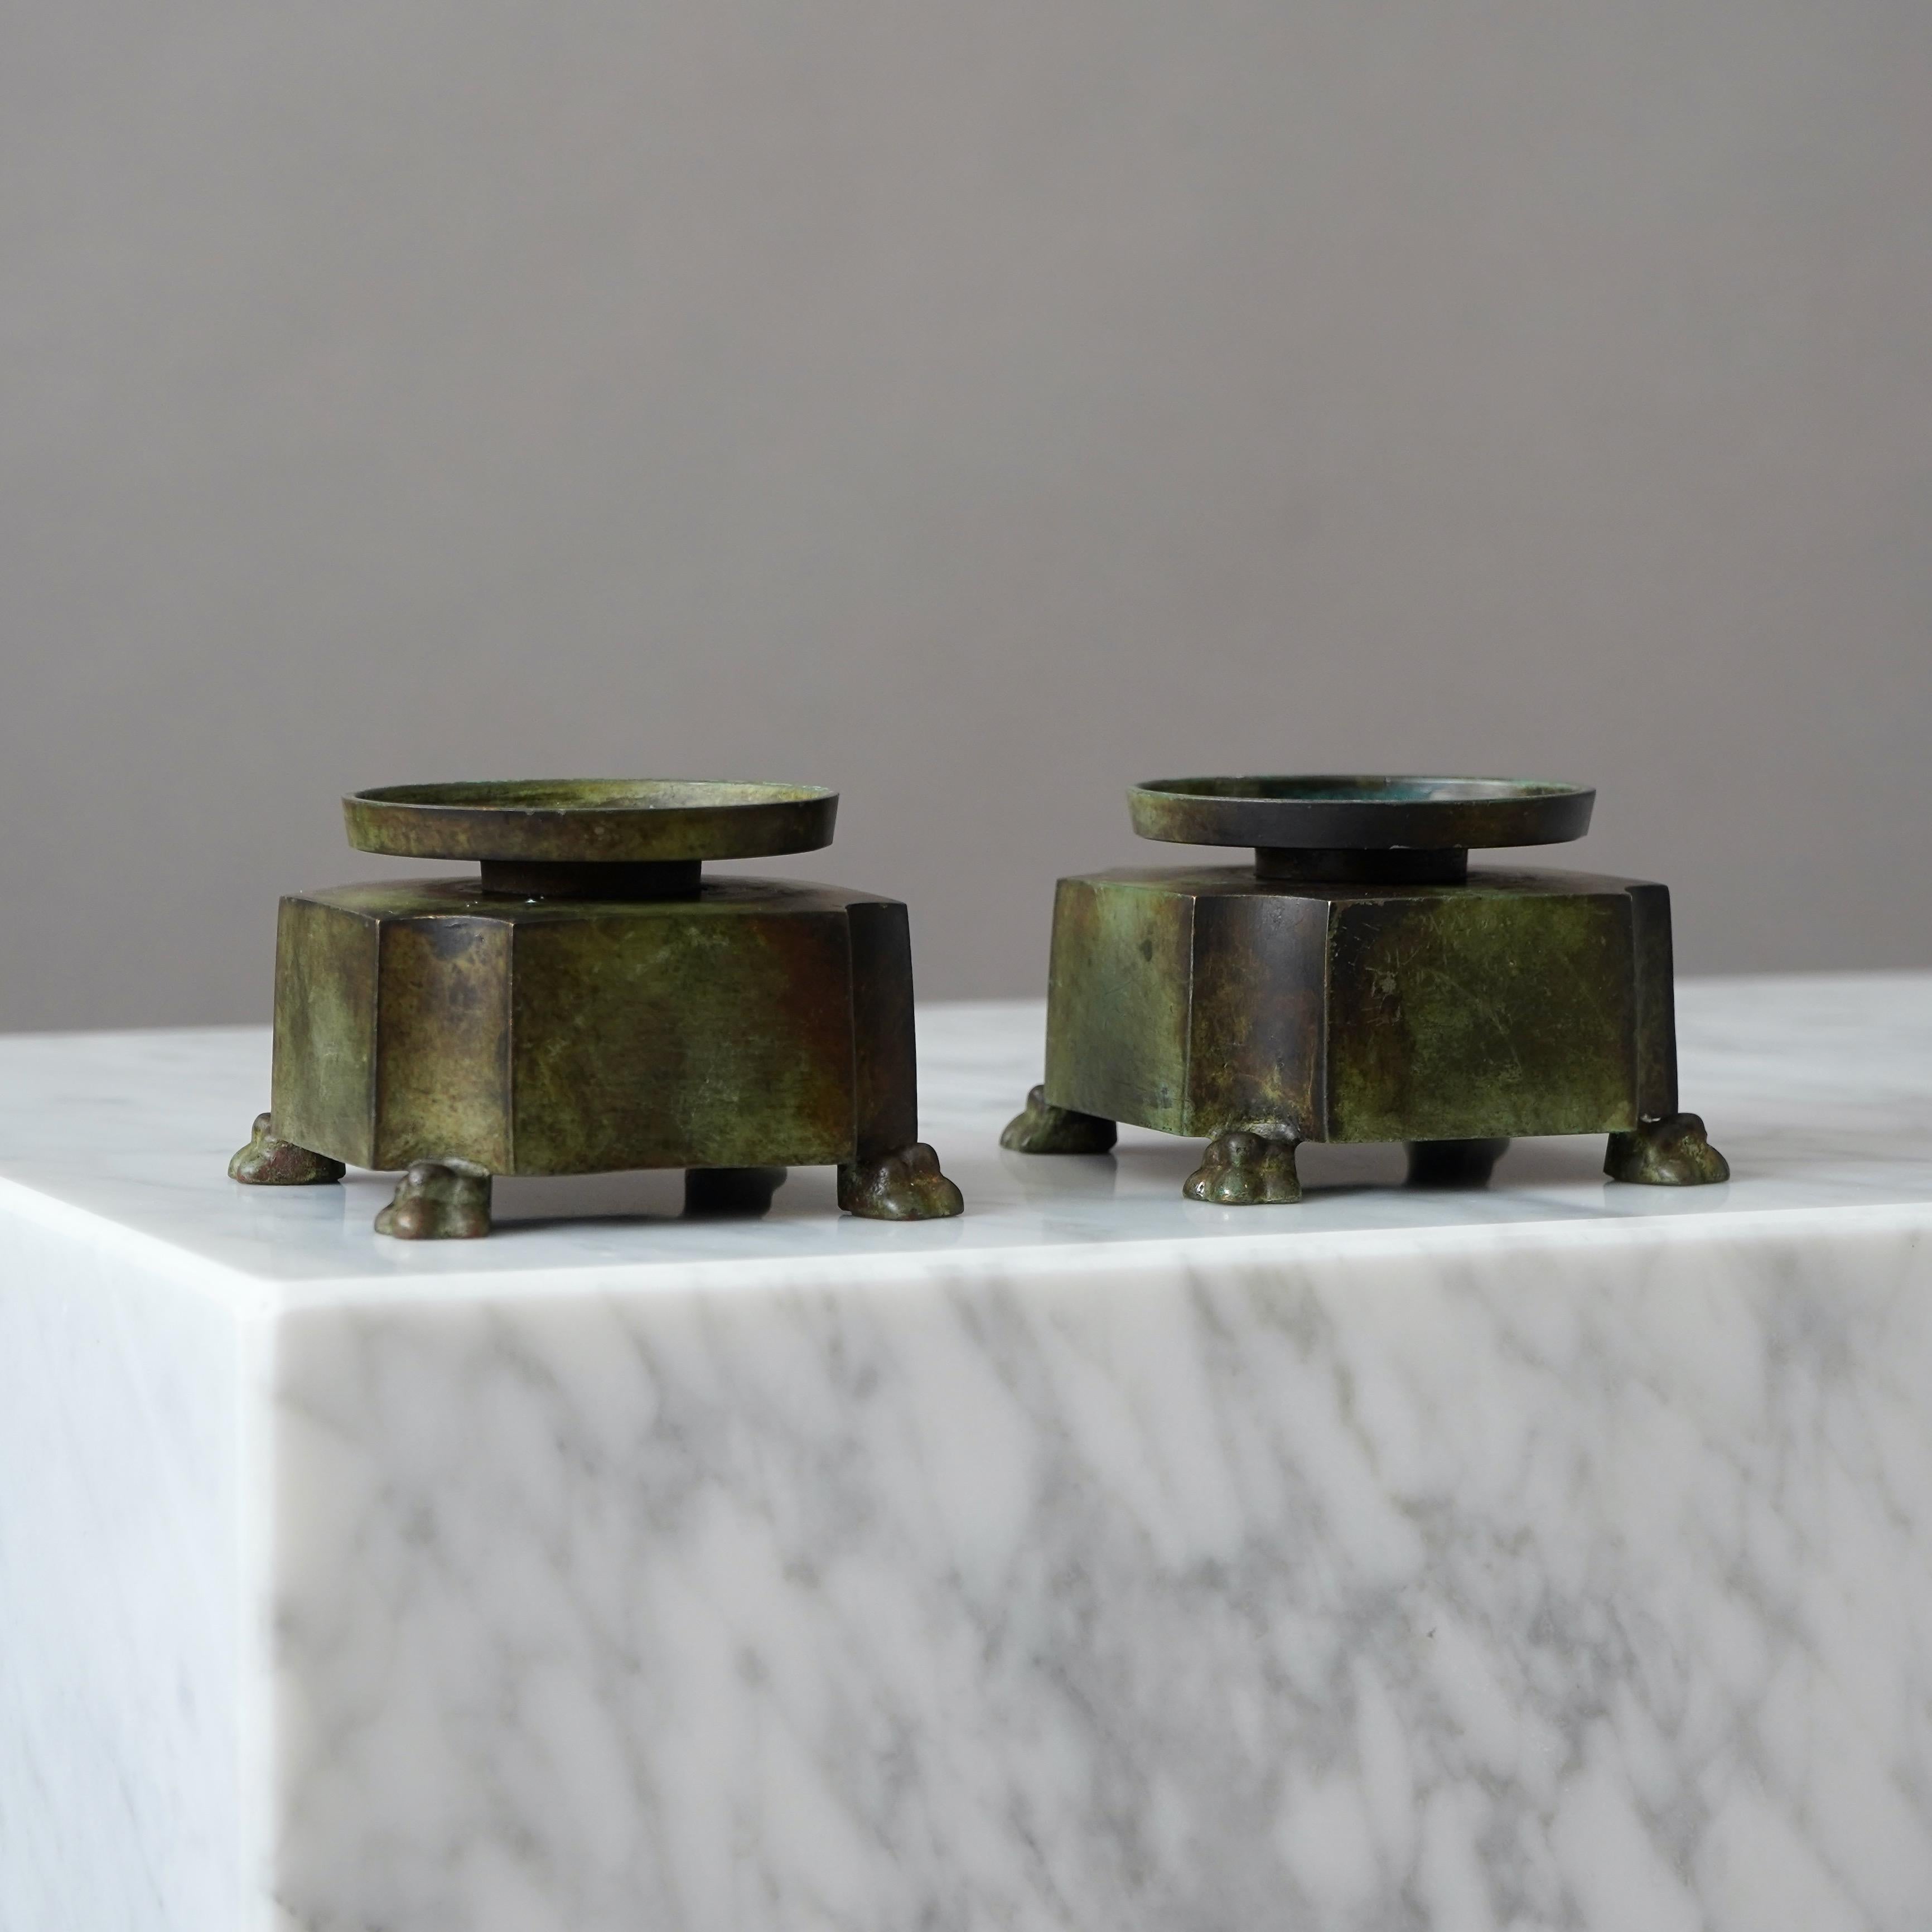 Ein Paar schwedische Grace-Kerzenleuchter aus Bronze mit erstaunlicher Patina. 
Hergestellt von GAB Guldsmedsaktiebolaget, Schweden, 1930er Jahre.  

Toller Zustand.
Gestempelt 'BRONS' und Herstellerzeichen.